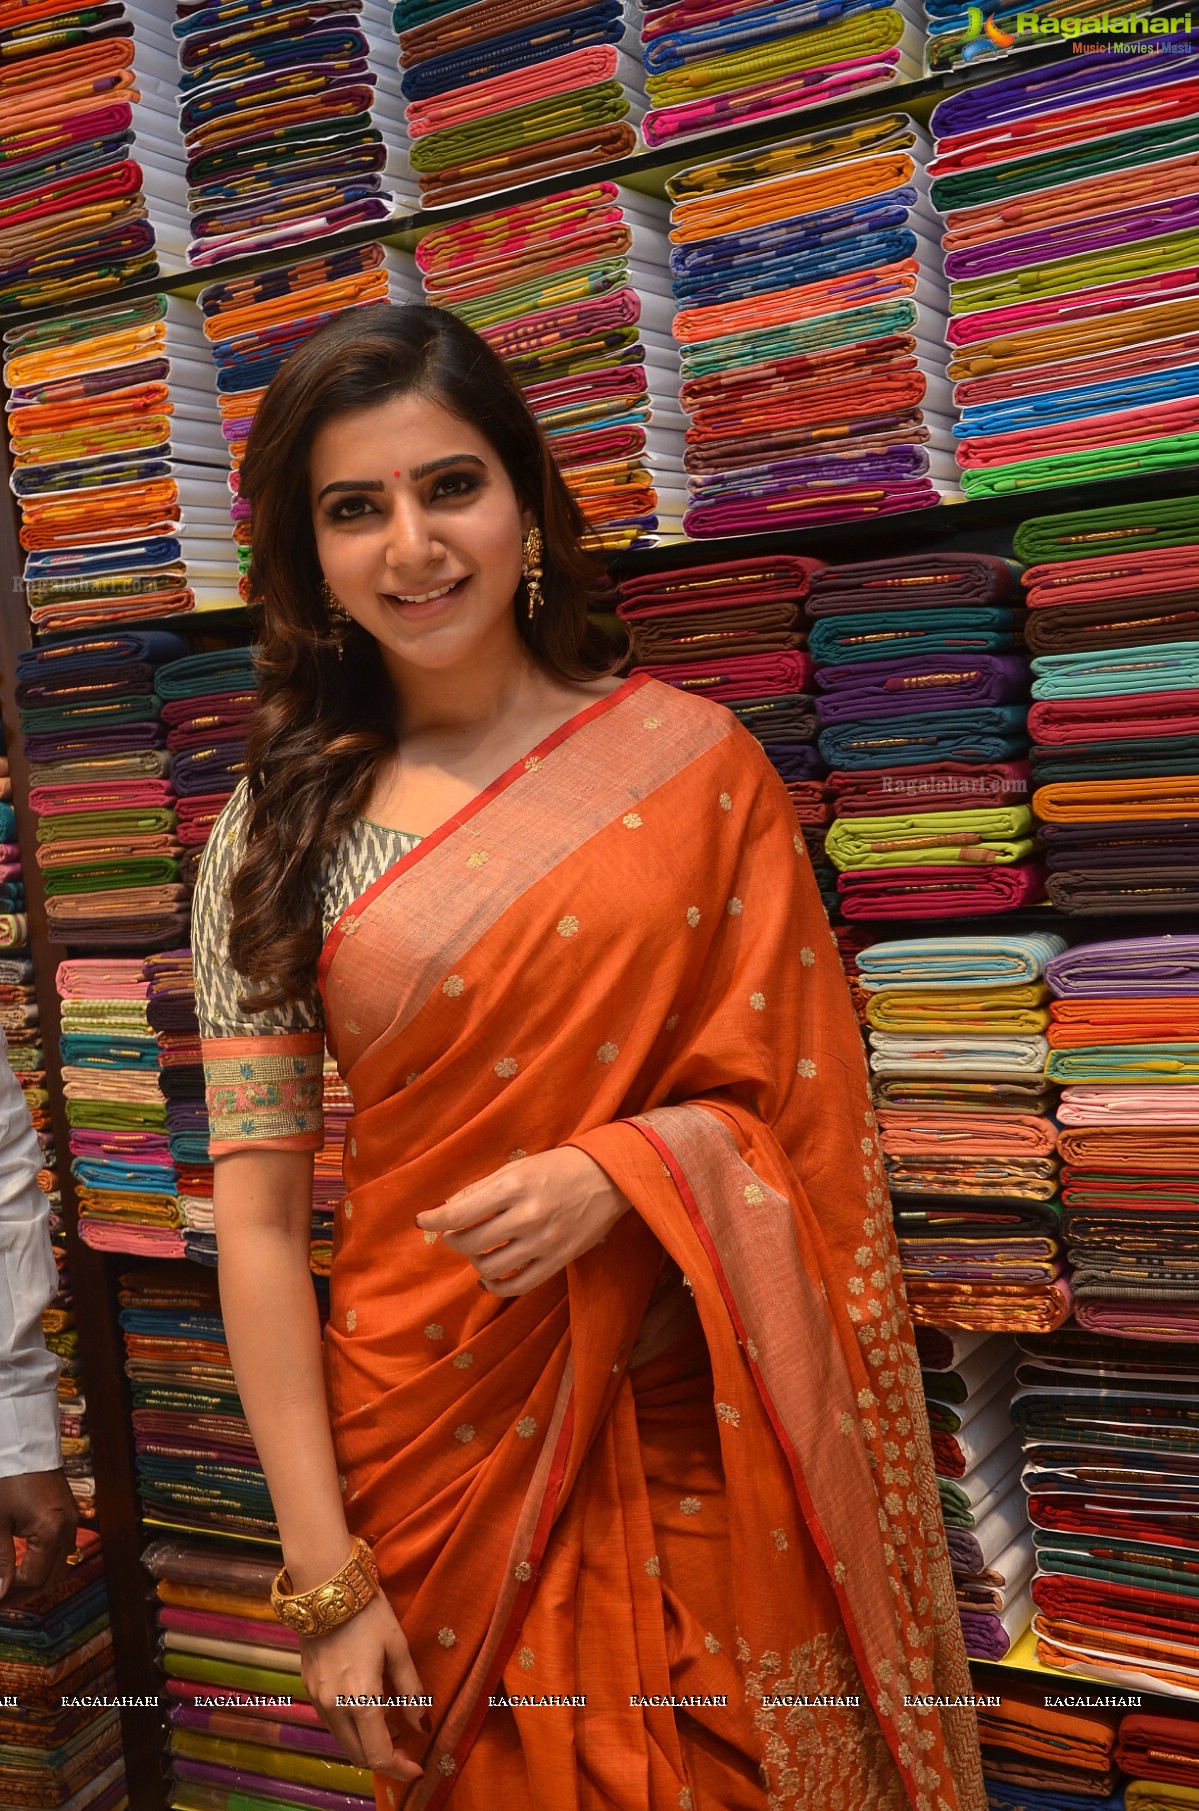 Samantha Akkineni at South India Shopping Mall